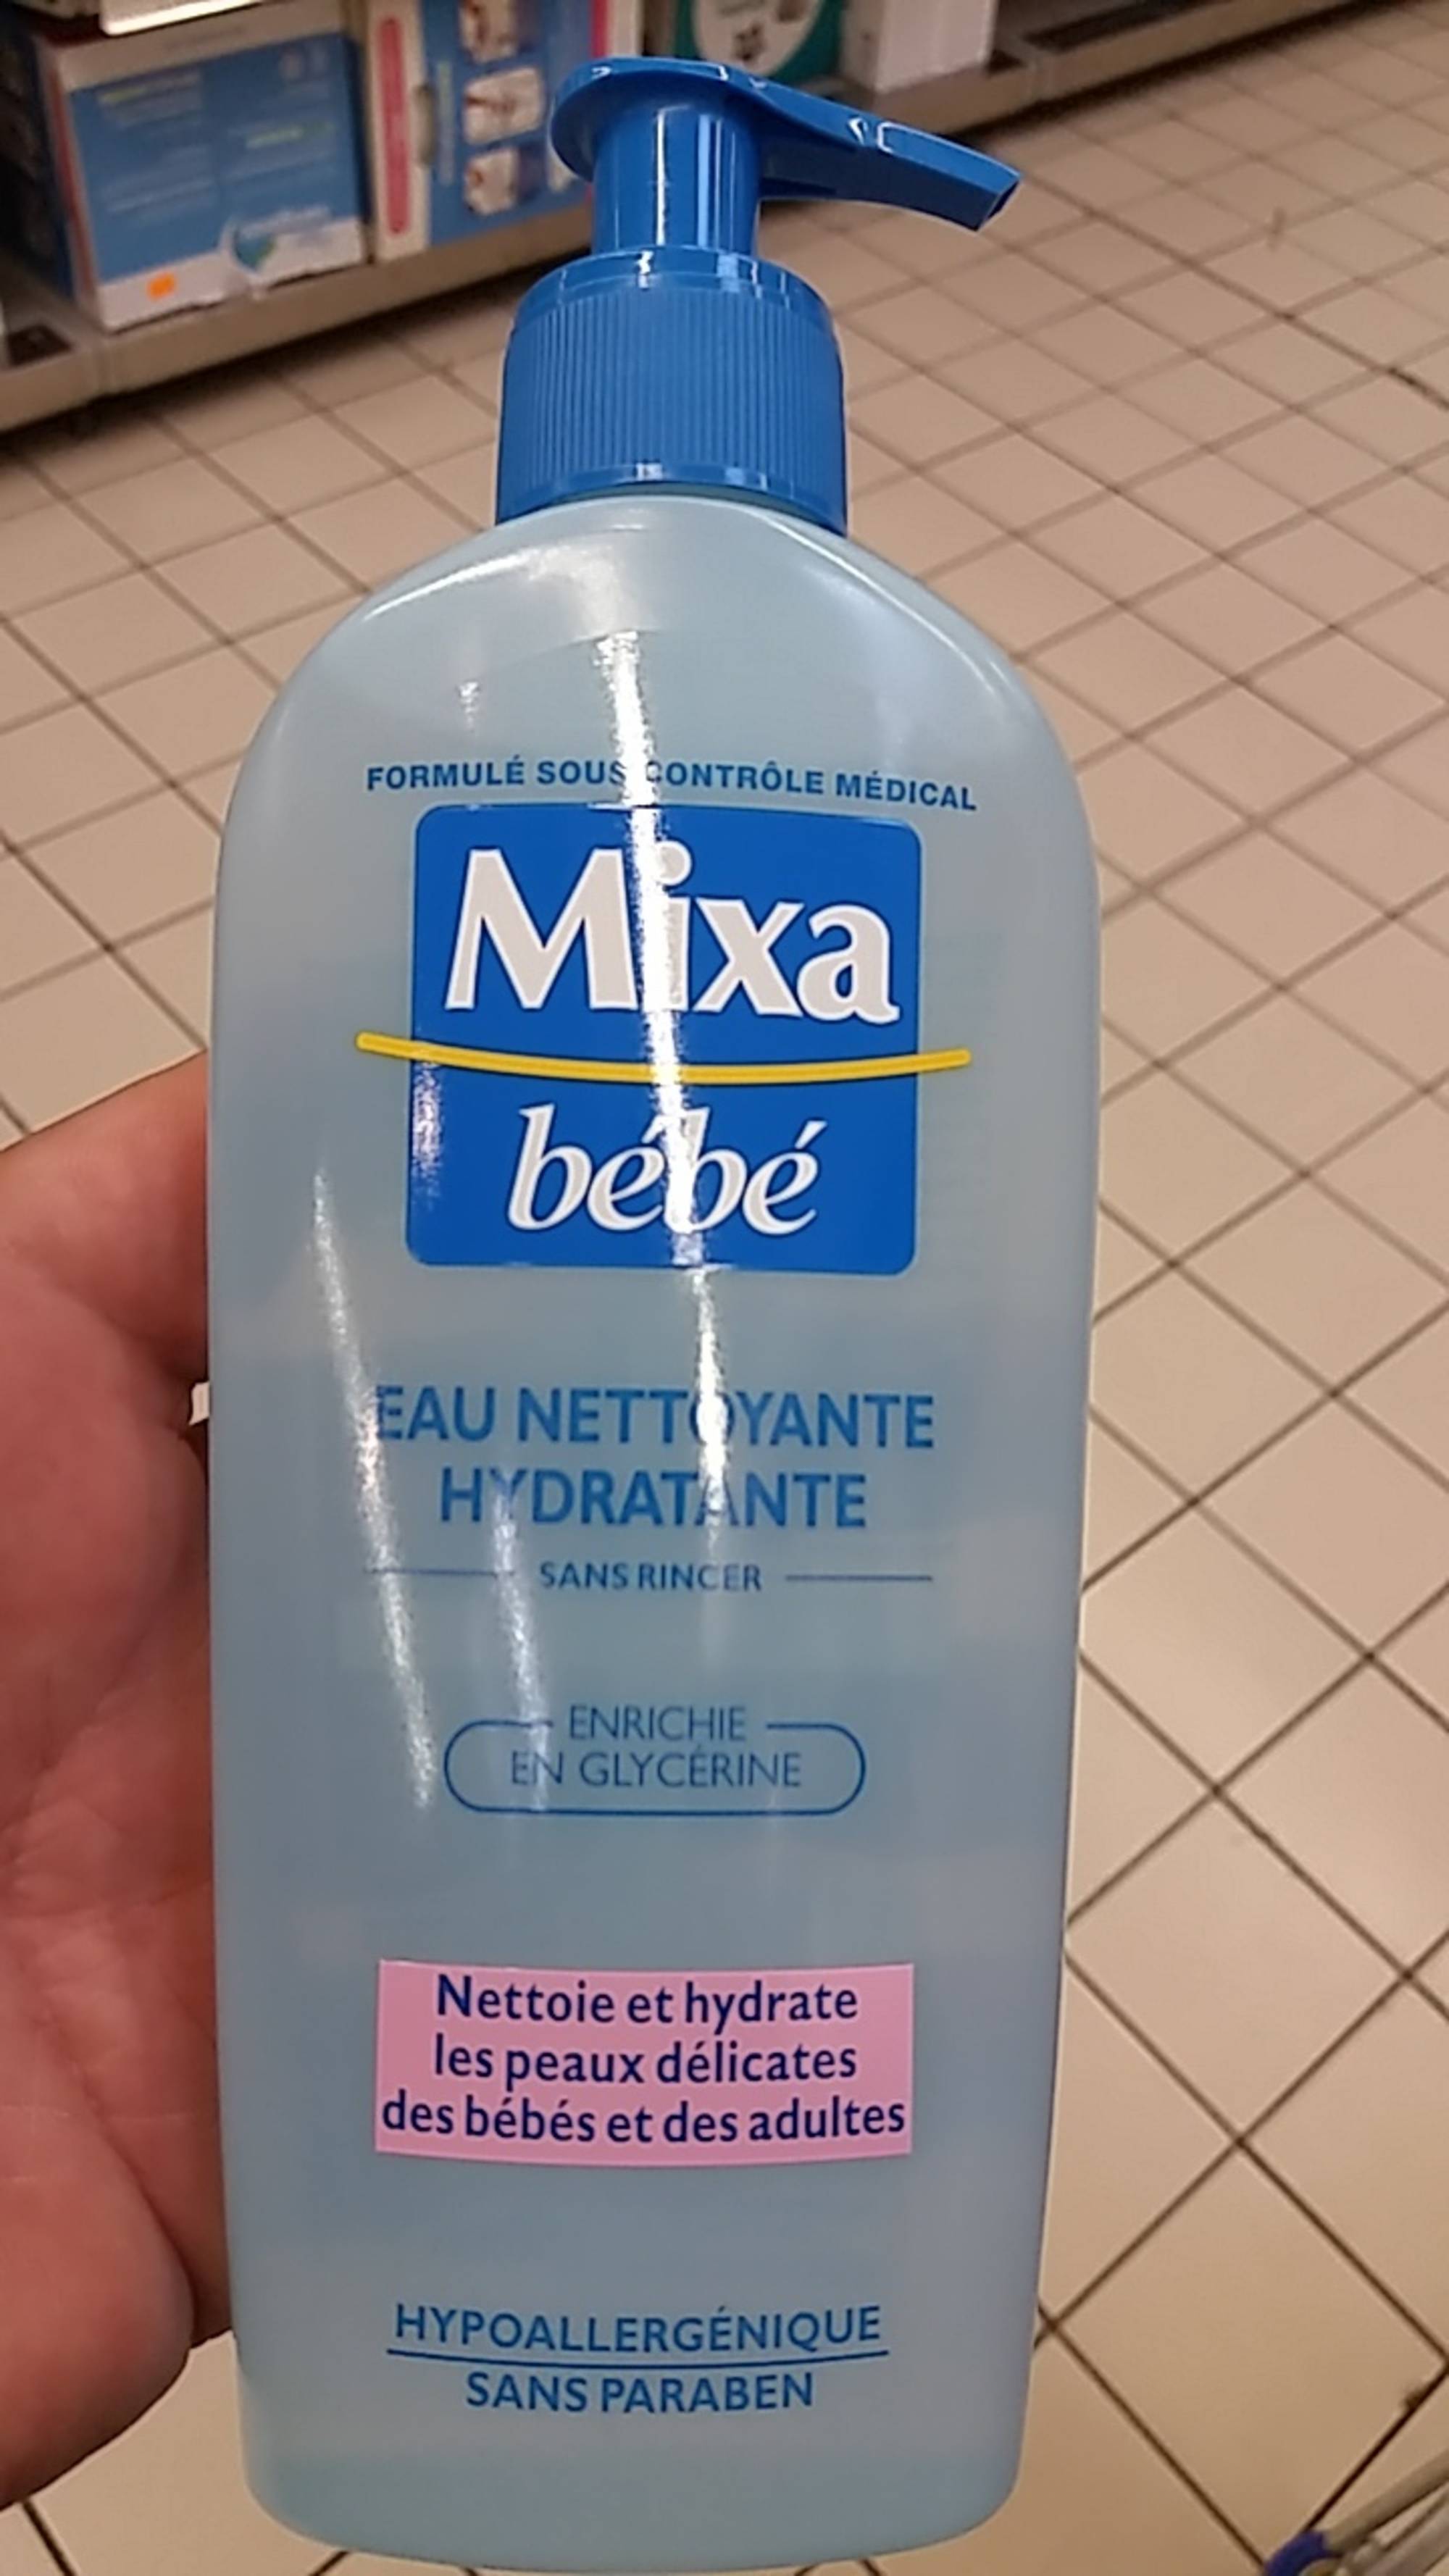 MIXA BÉBÉ - Eau nettoyante hydratante